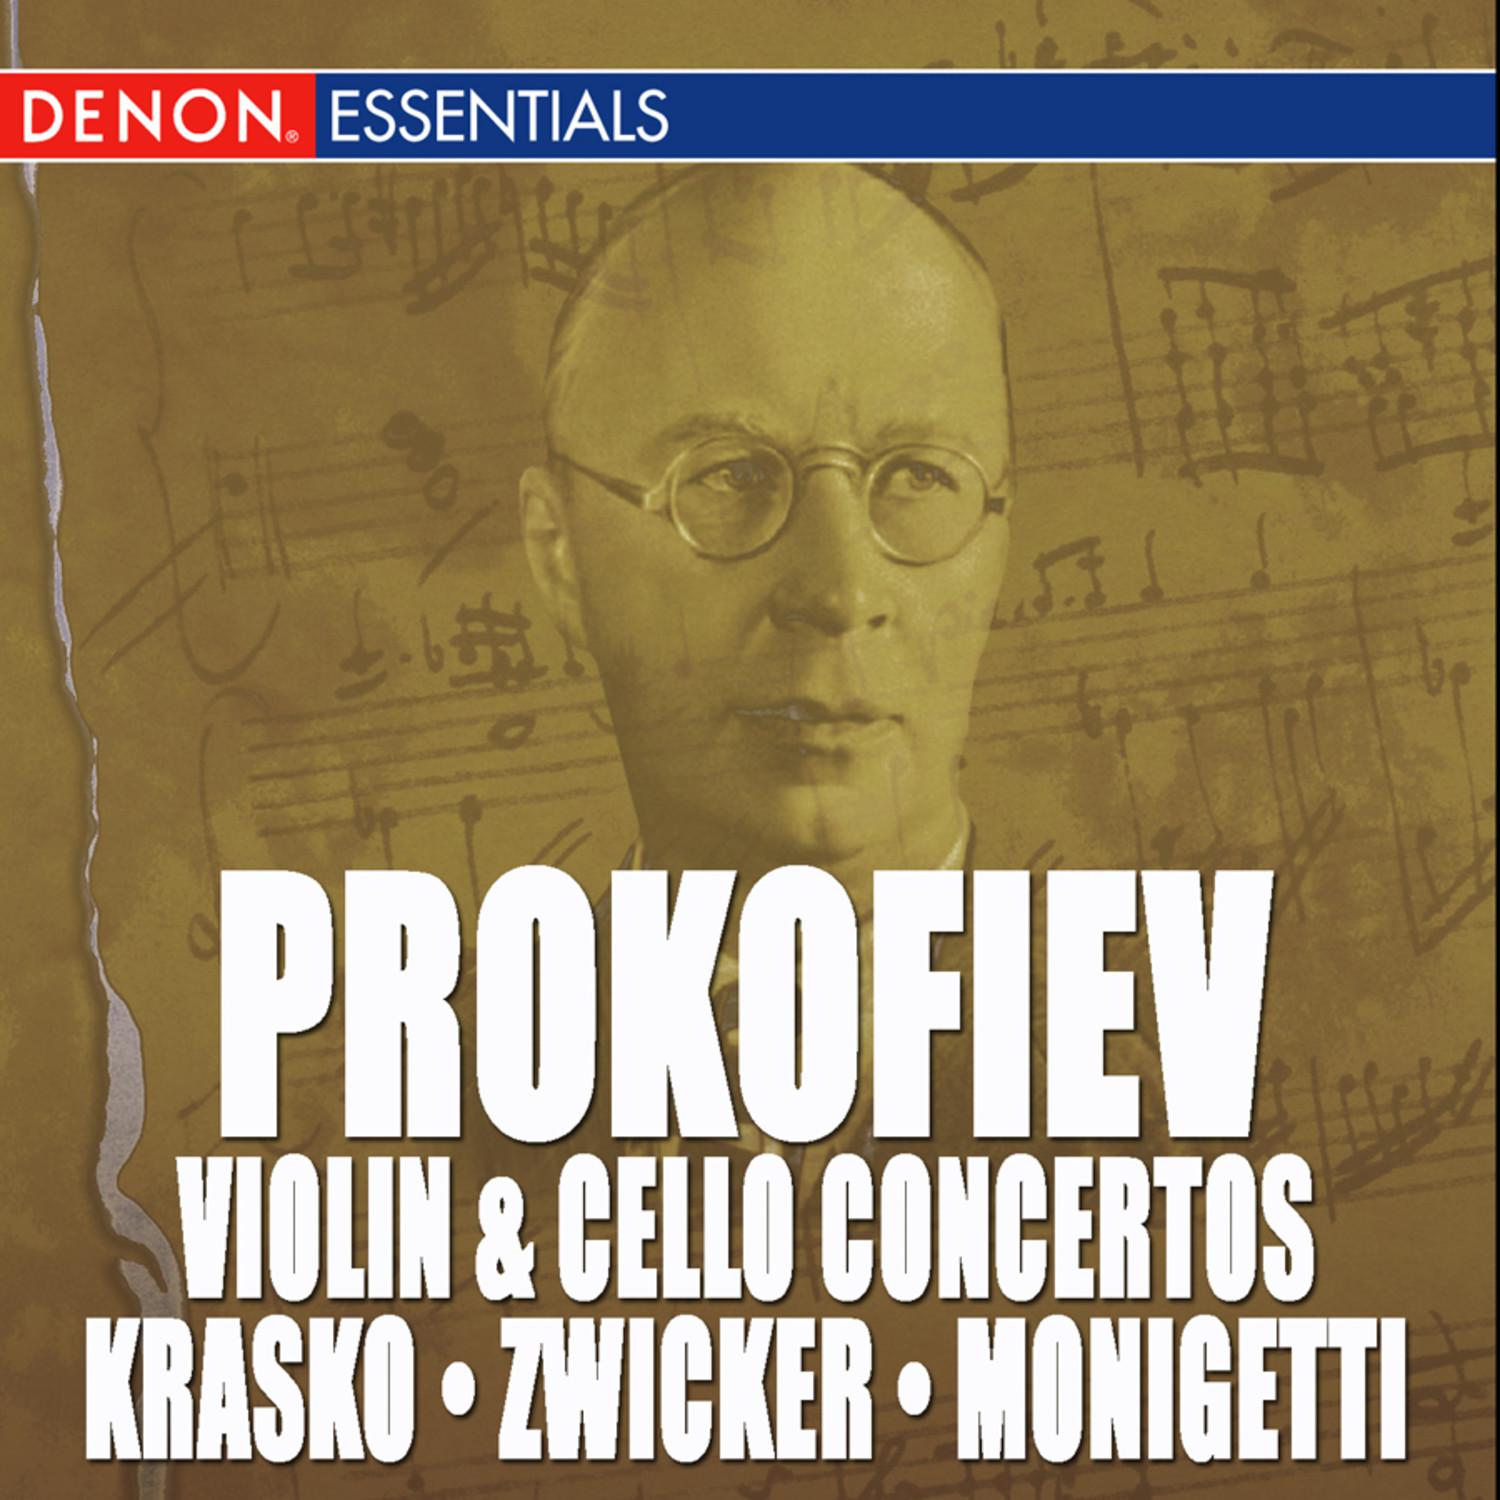 Violin Concerto No. 2 in G Minor, Op. 63: I. Allegro moderato